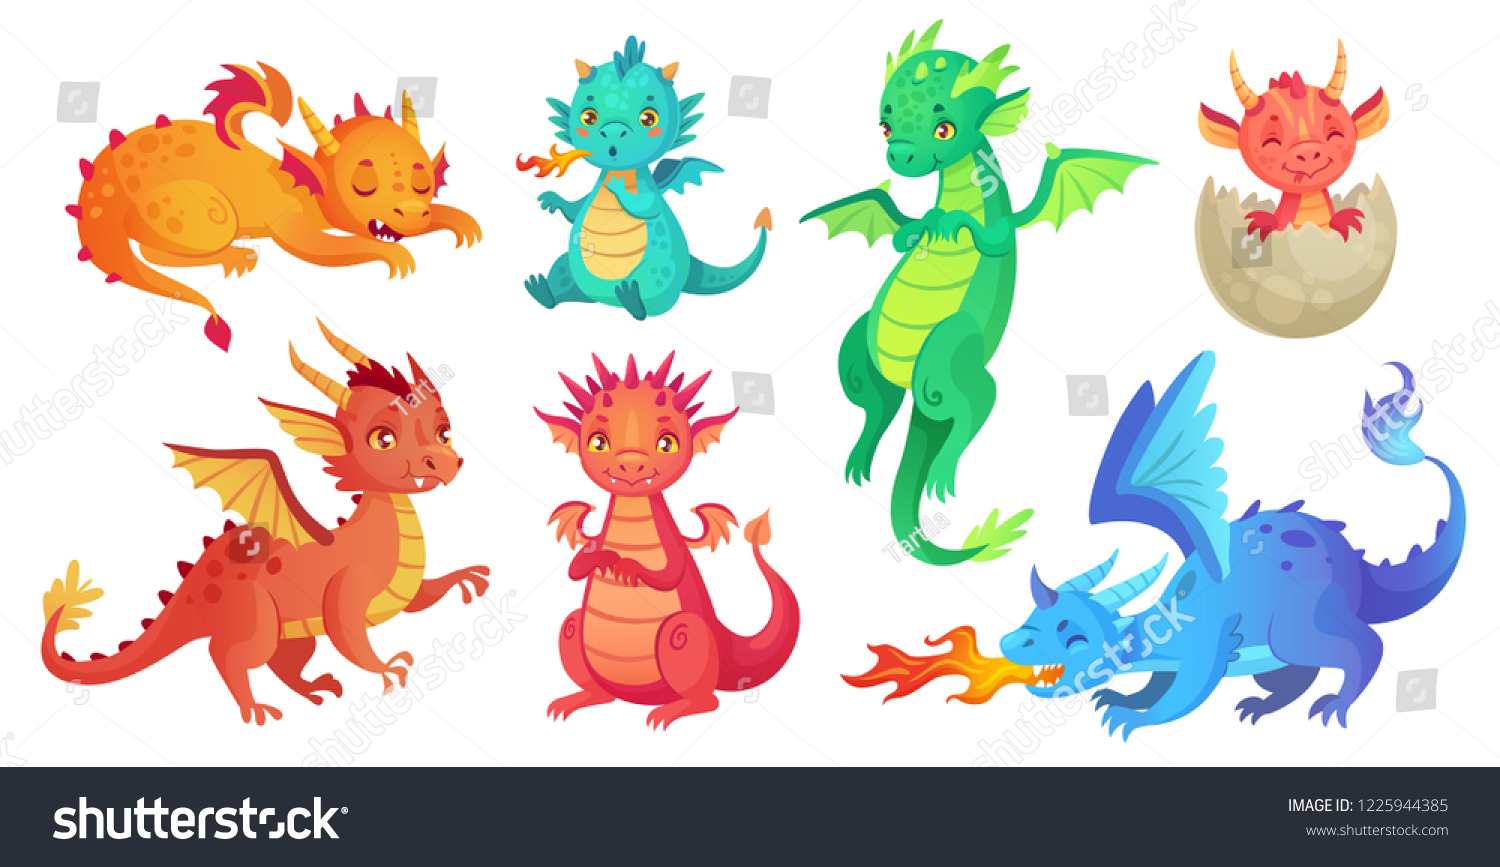 Les Enfants Du Dragon Fantasy Bebe Image Vectorielle De Stock Libre De Droits